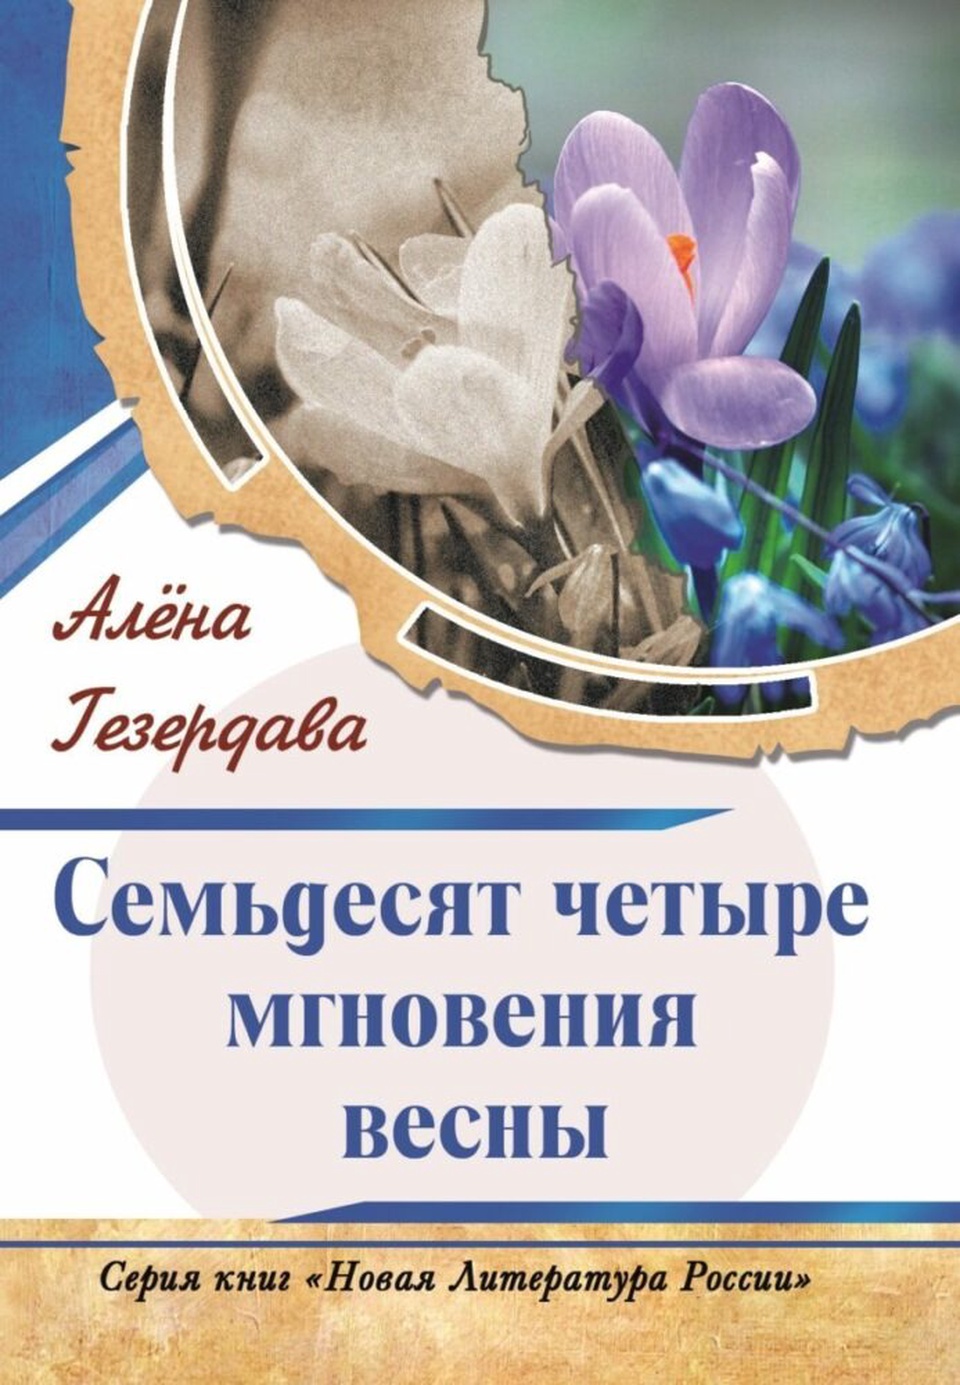 Алёна Гезердава «Семьдесят четыре мгновения весны» - 120 ₽, заказать онлайн.